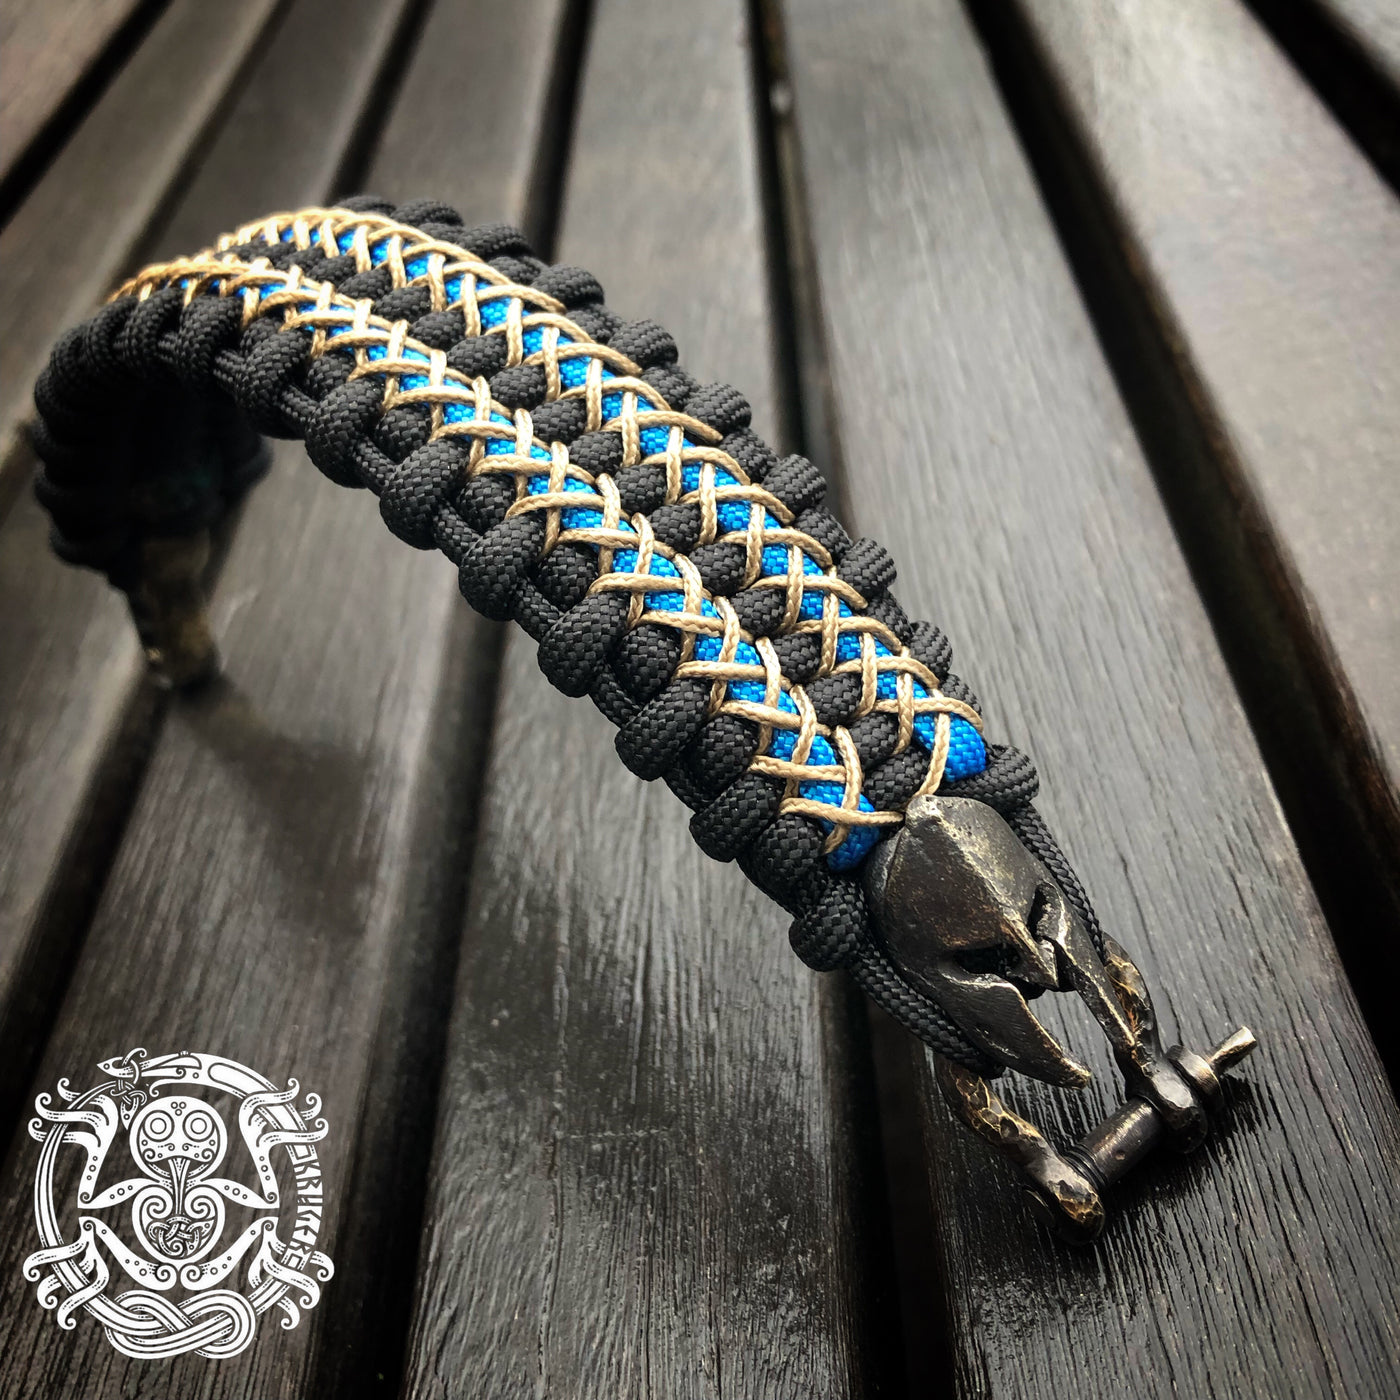 Elite Spartan Paracord Bracelets Copper Beads / 21 cm